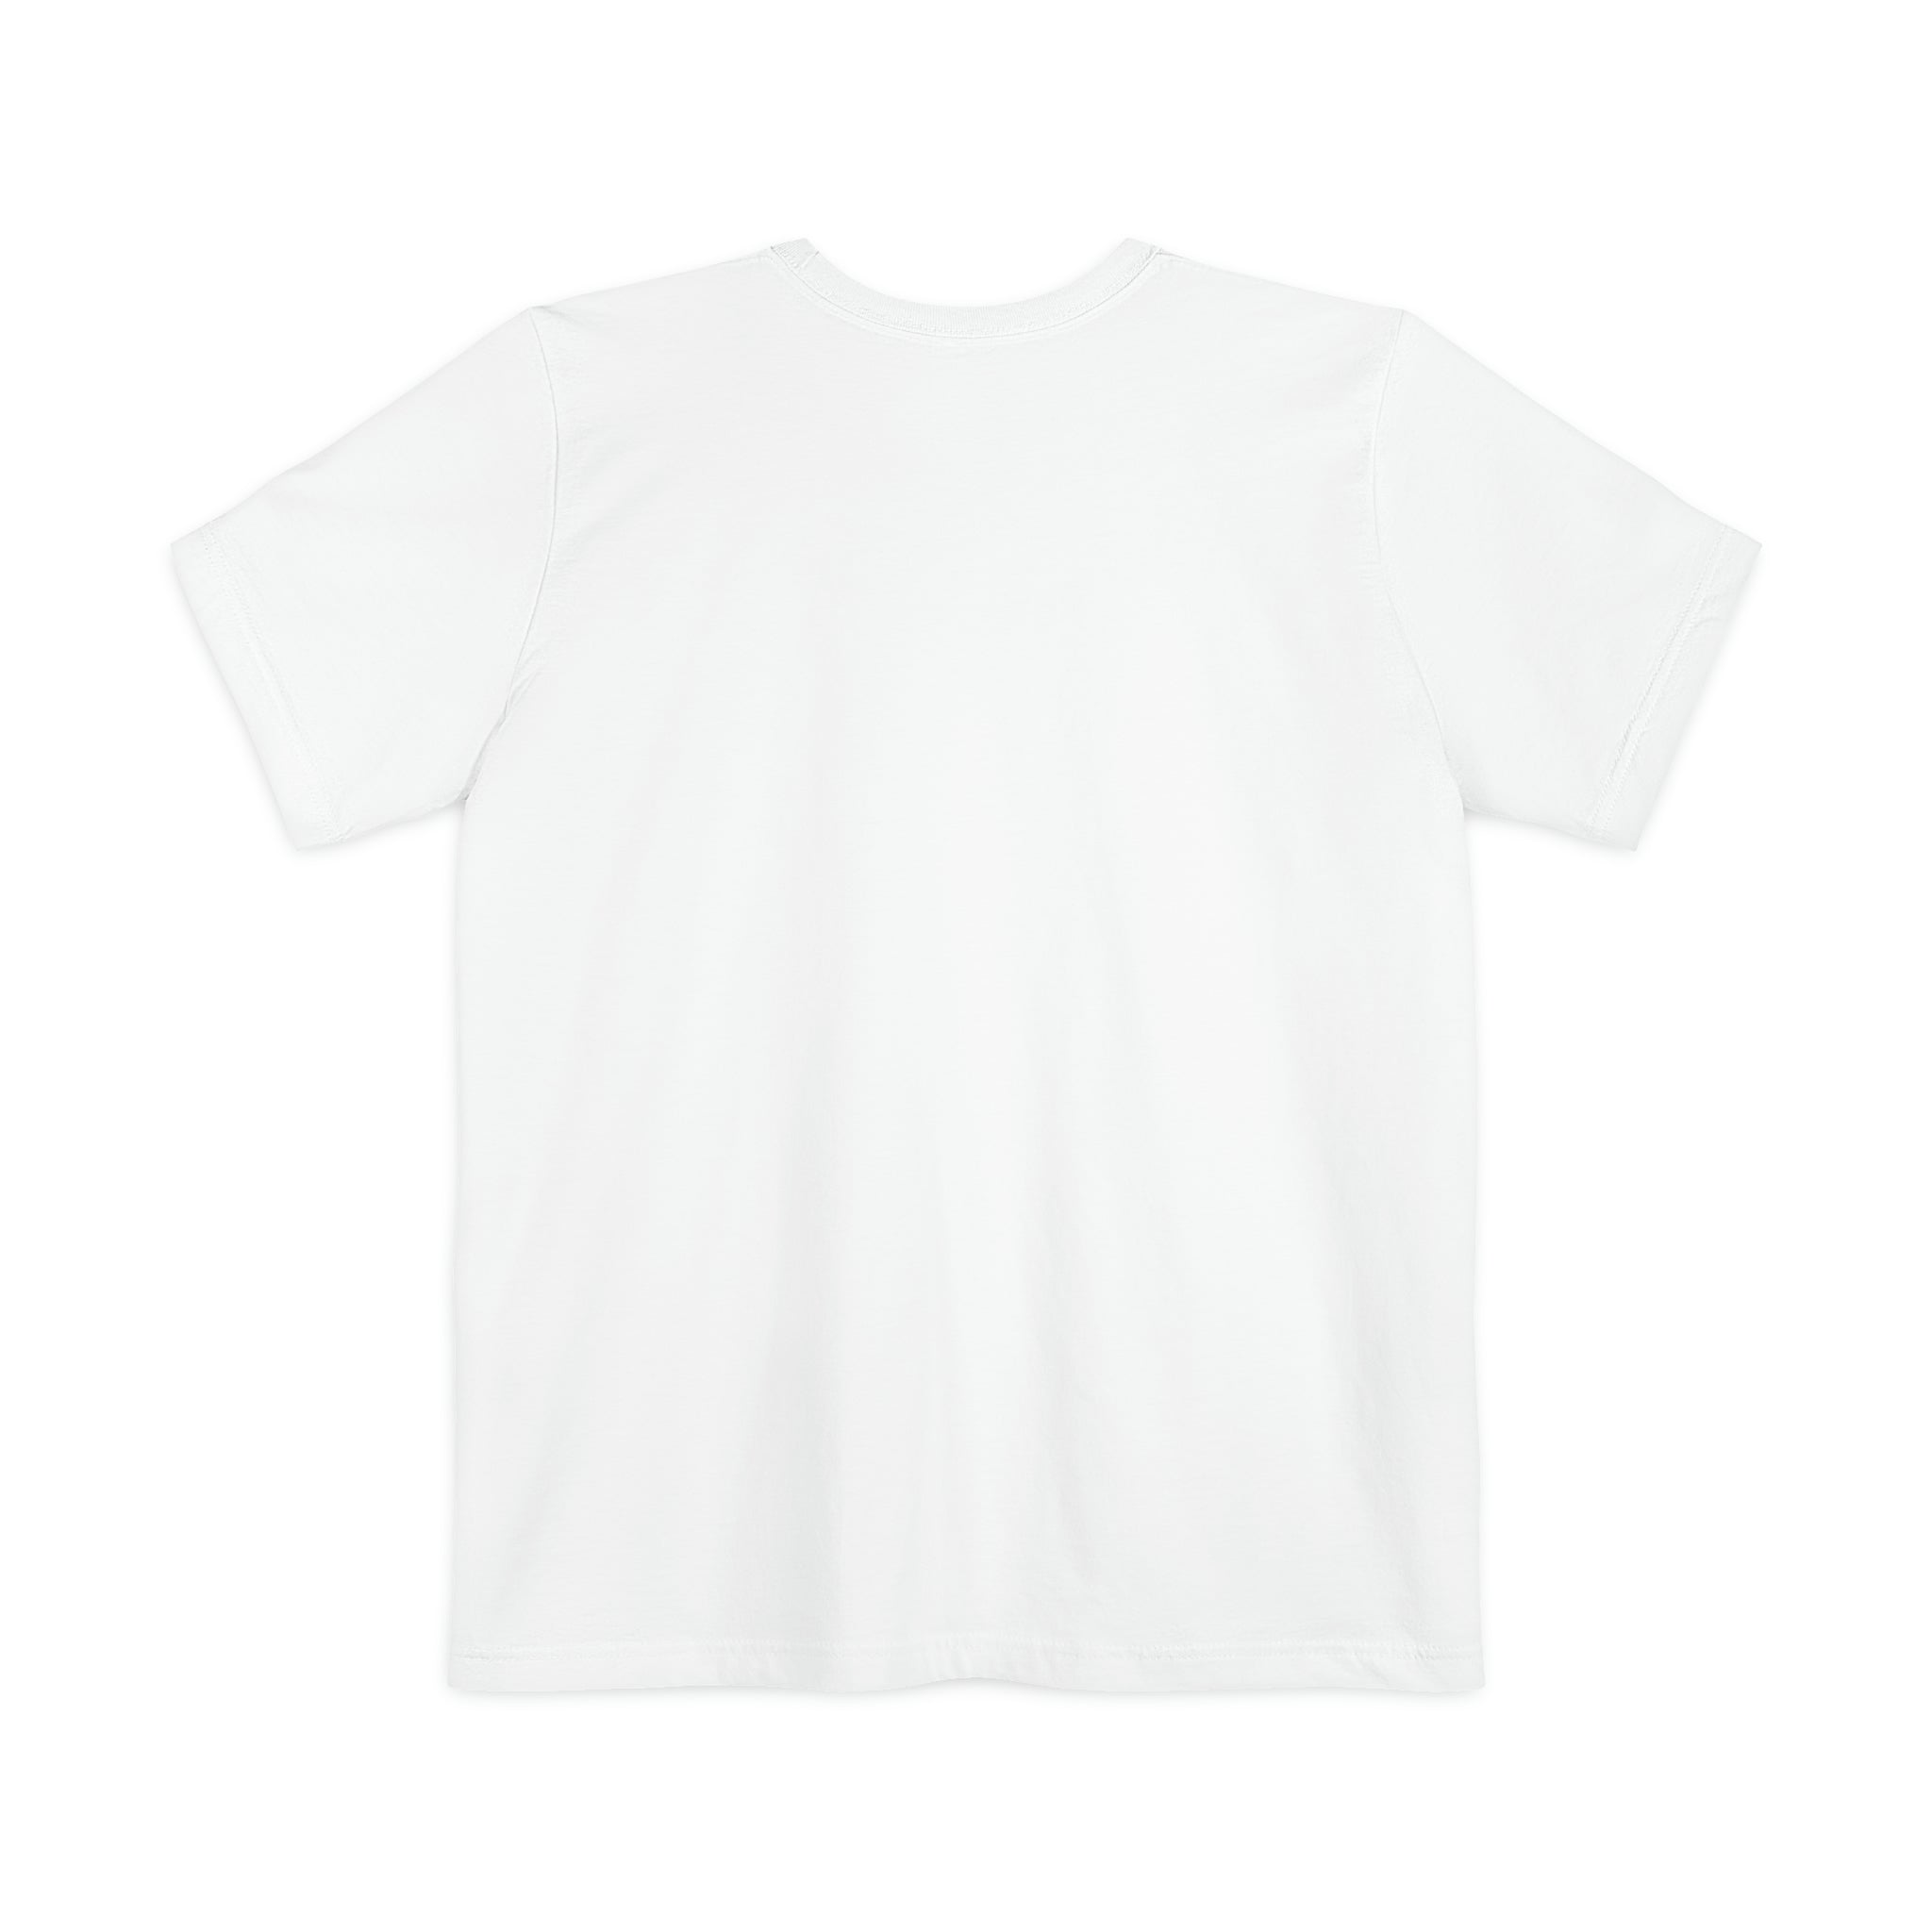 Unisex Black & White OFW Pocket T-shirt